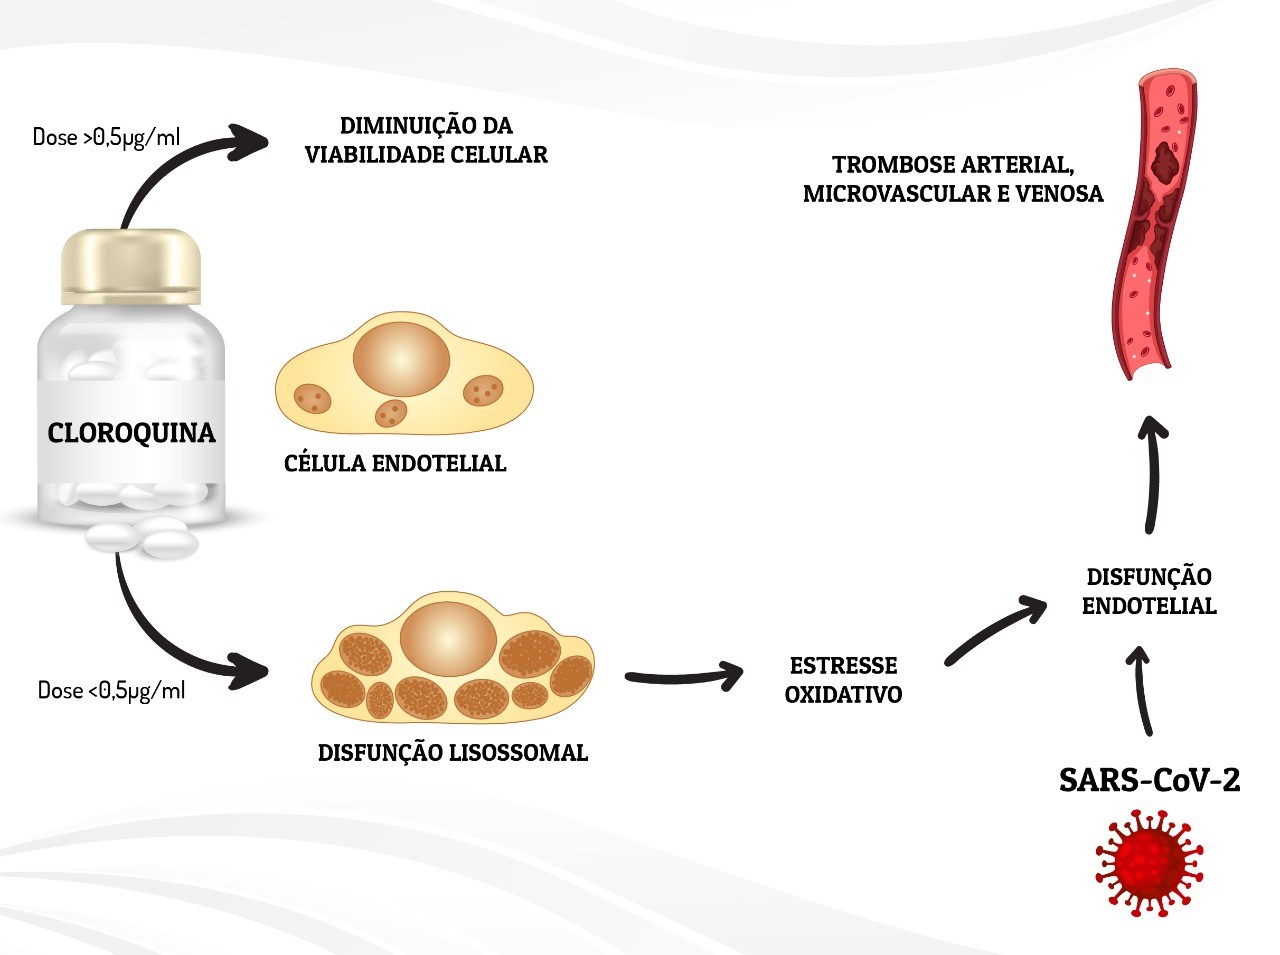 Ilustração mostra os efeitos de diferentes concentrações de cloroquina nas células endoteliais, responsáveis pelo revestimento dos vasos sanguíneos (Foto: Universidade Federal do Paraná (UFPR))